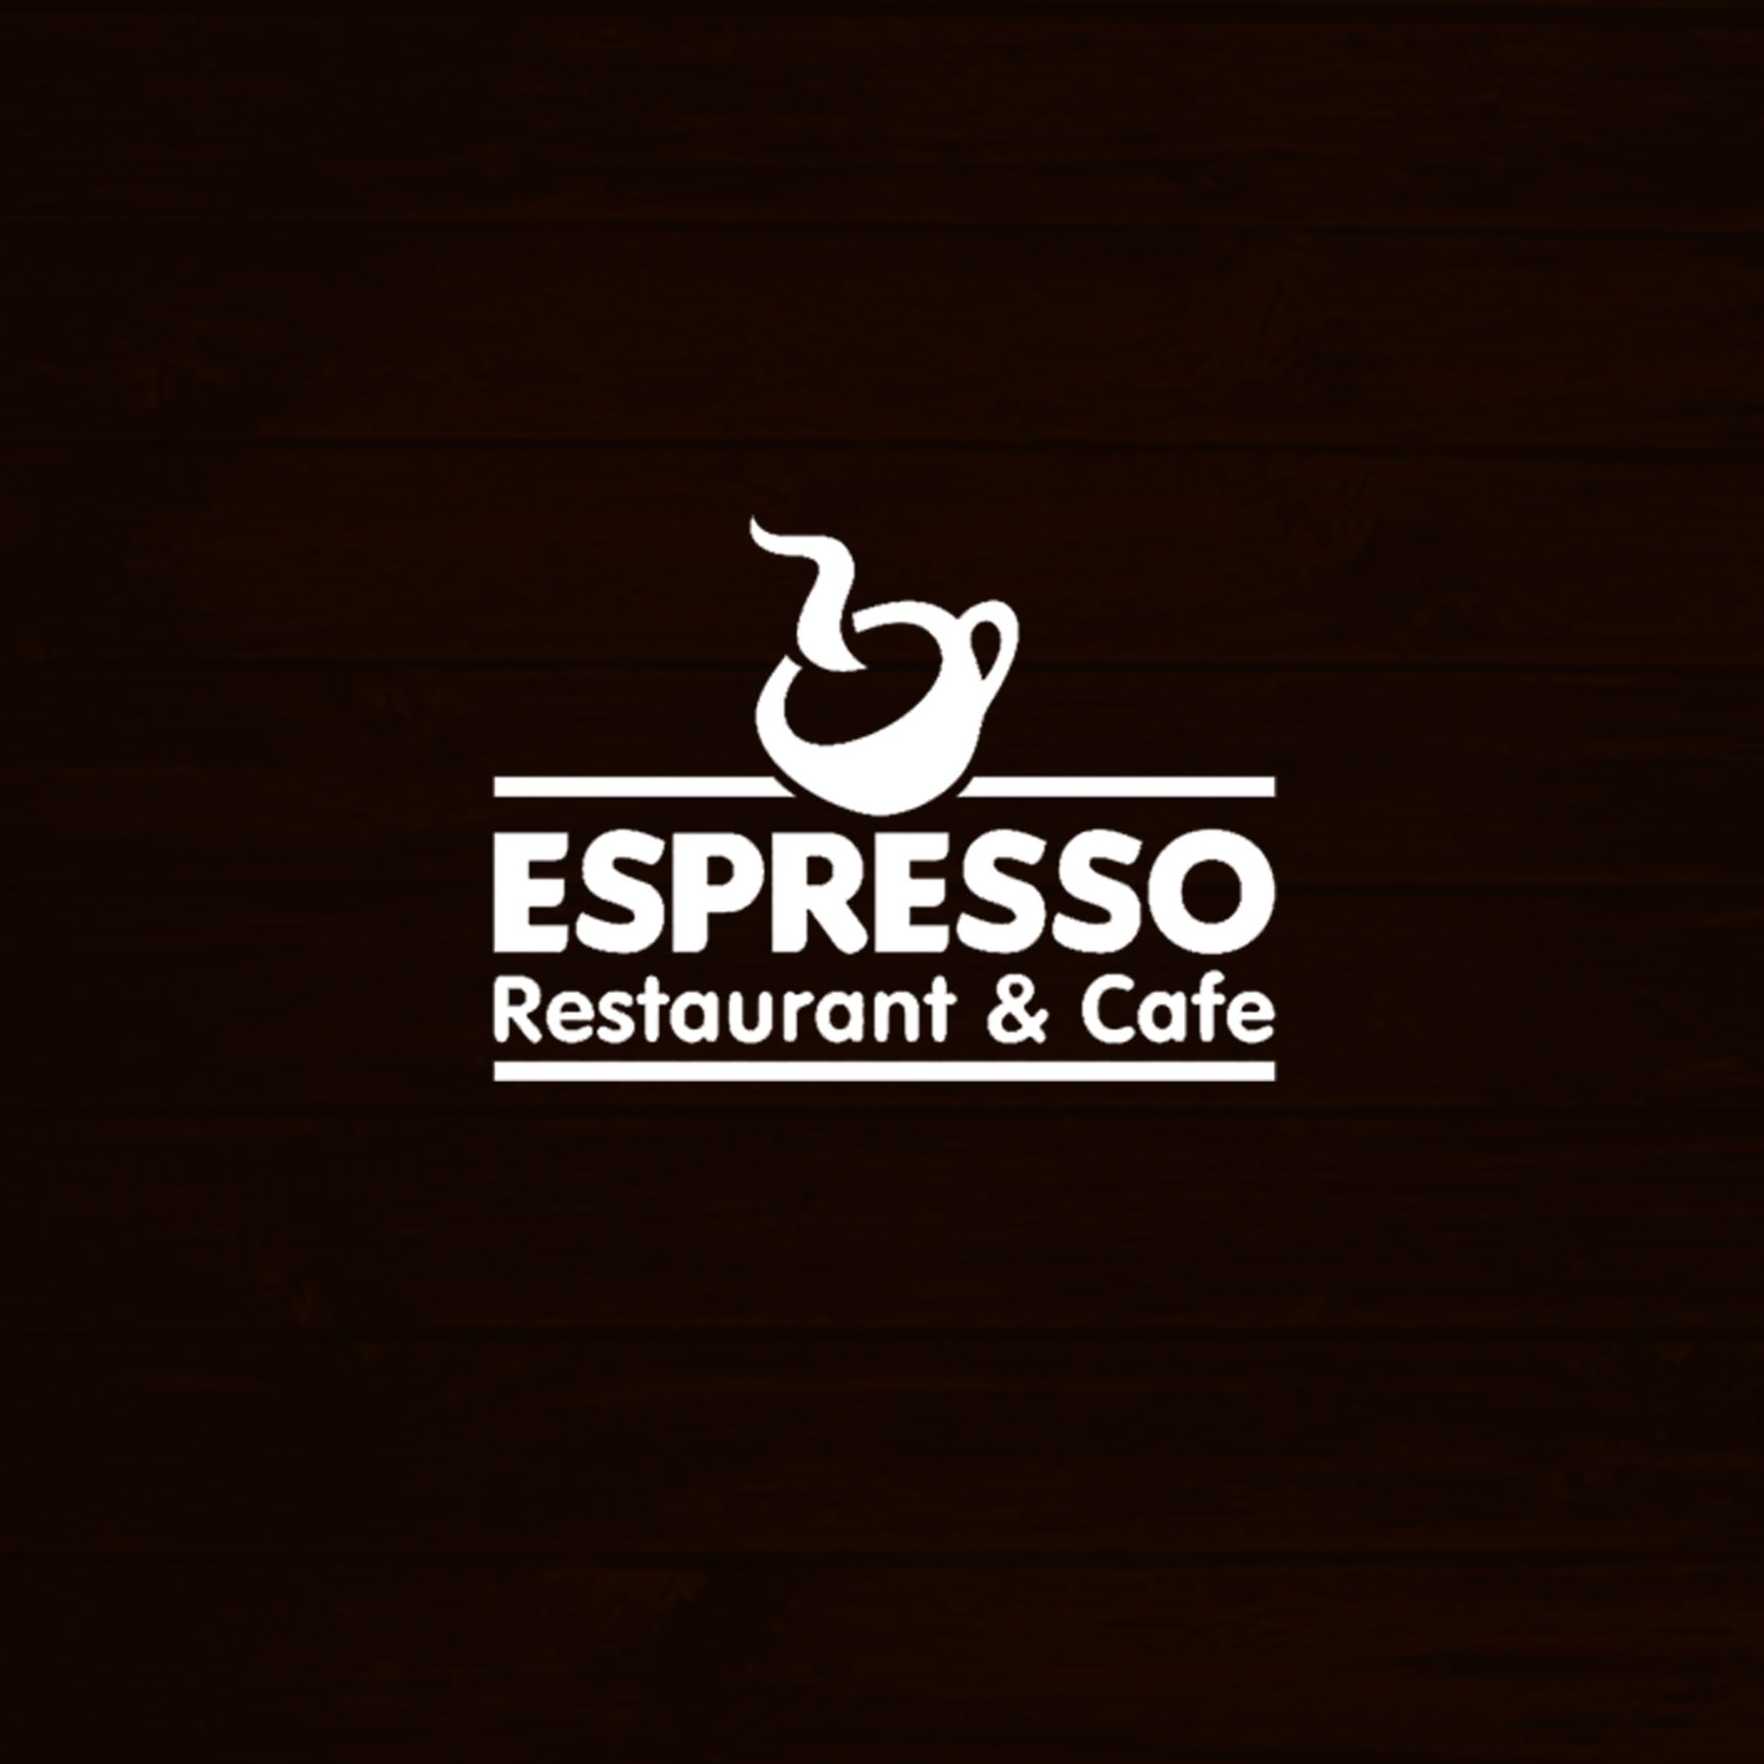 Espresso Restaurant & Cafe